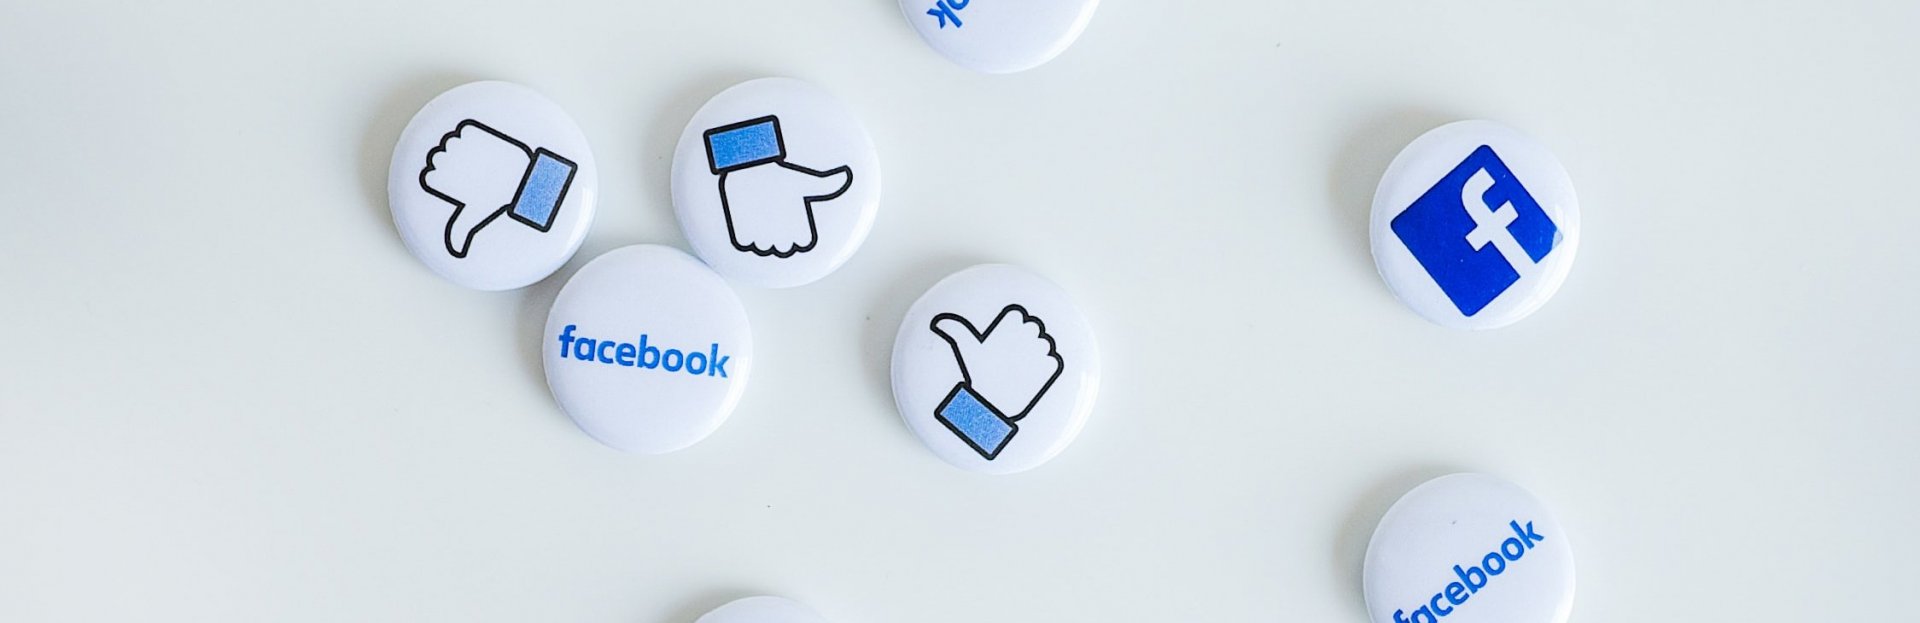 Facebook lanza una app para gestionar cuentas de empresas